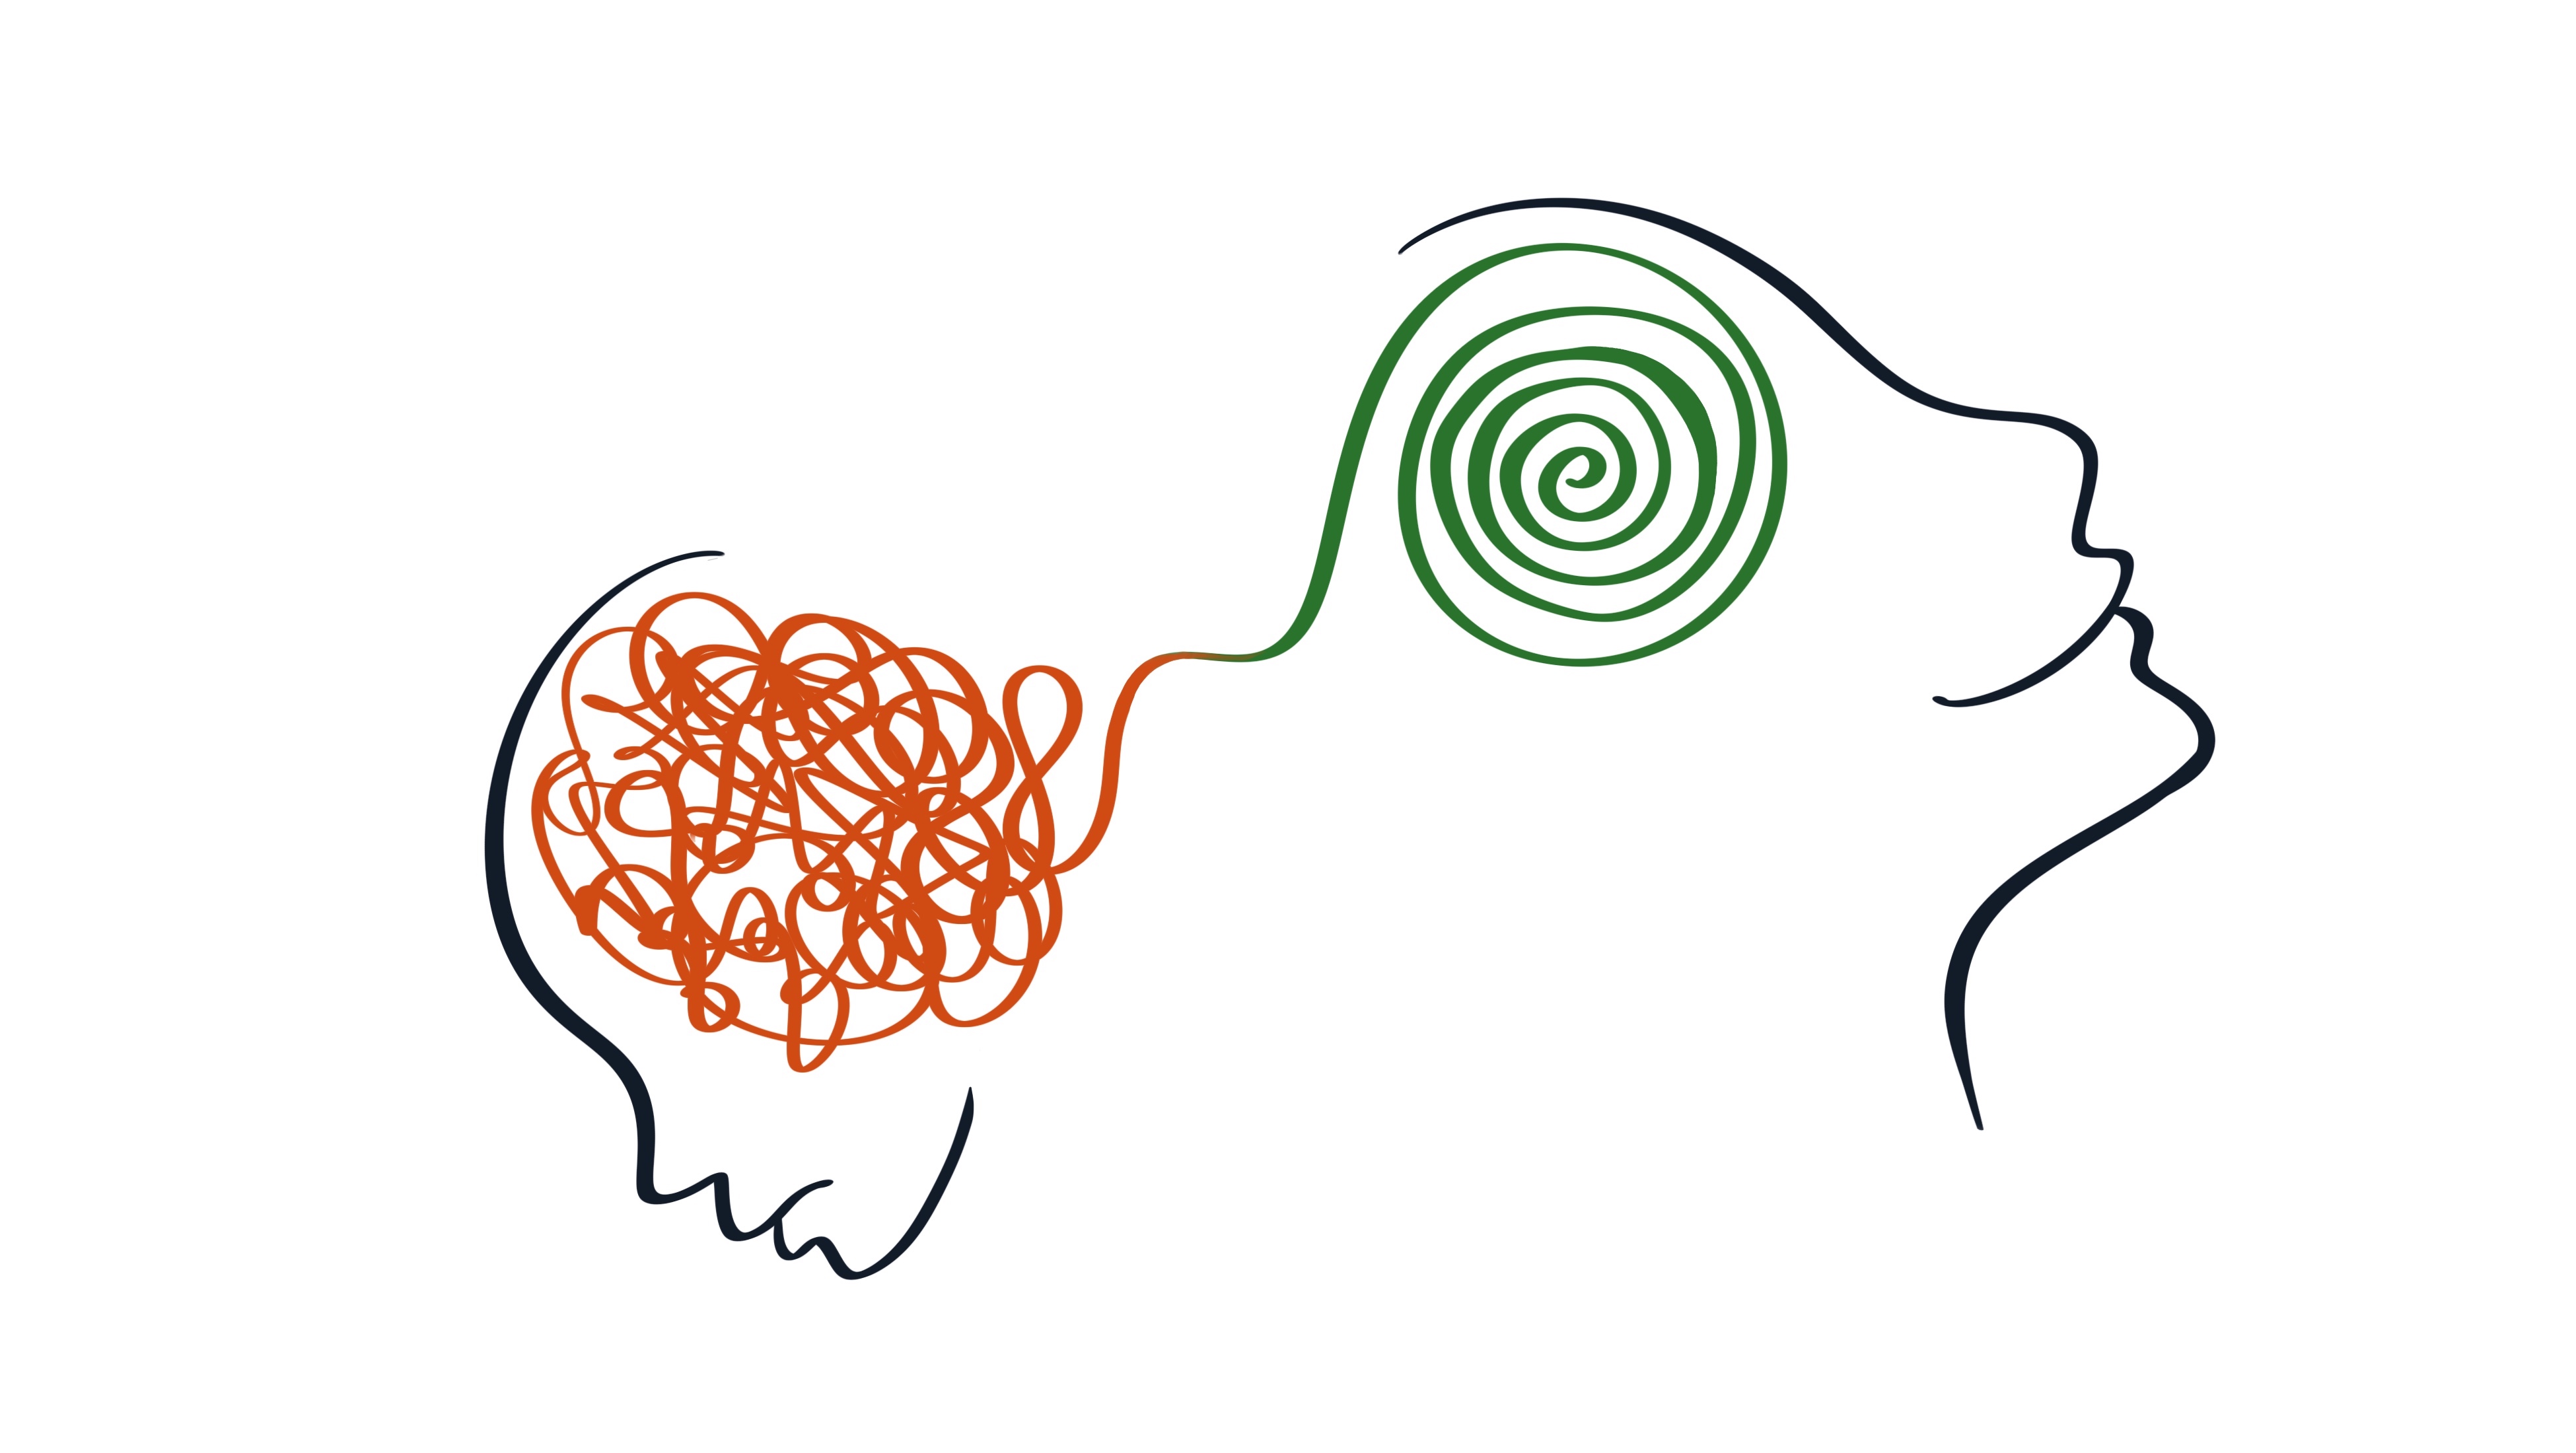 Illustrativ werden zwei Köpfe dargestellt: einer mit wirren Gedanken, ein Kopf geordnet und glücklich.